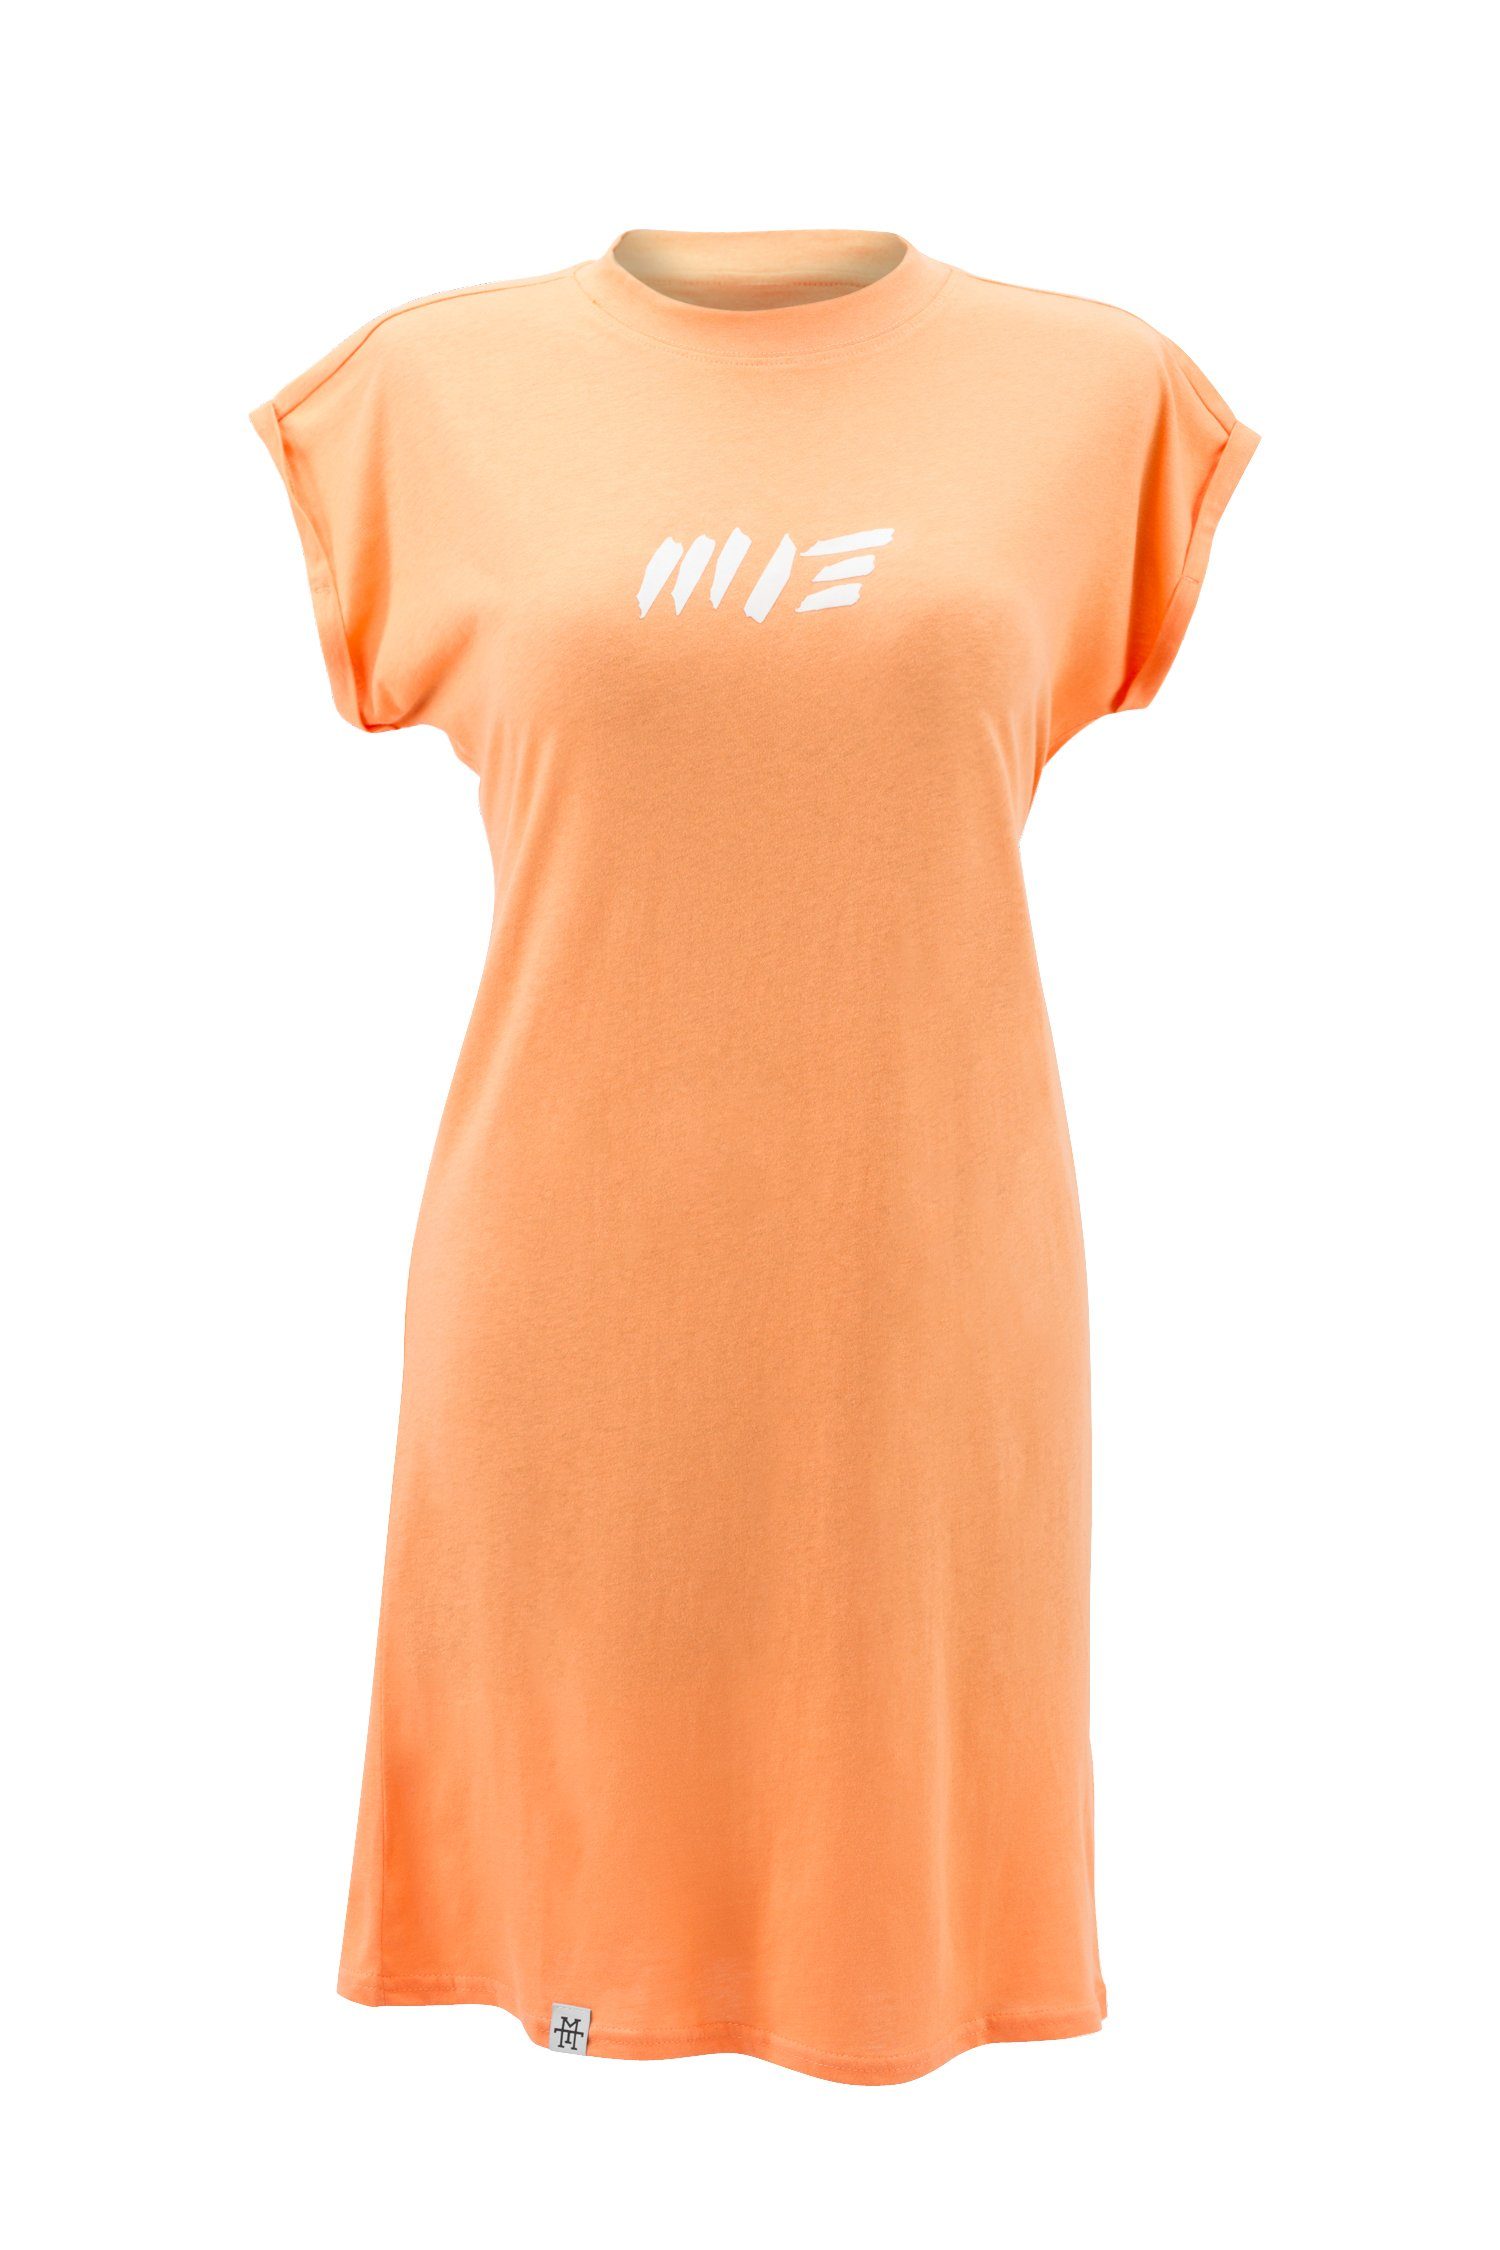 Manufaktur13 Shirtkleid Kleid, Peach T-Shirt - Summer Tee 100% Dress Sommerkleid, Jerseykleid Baumwolle